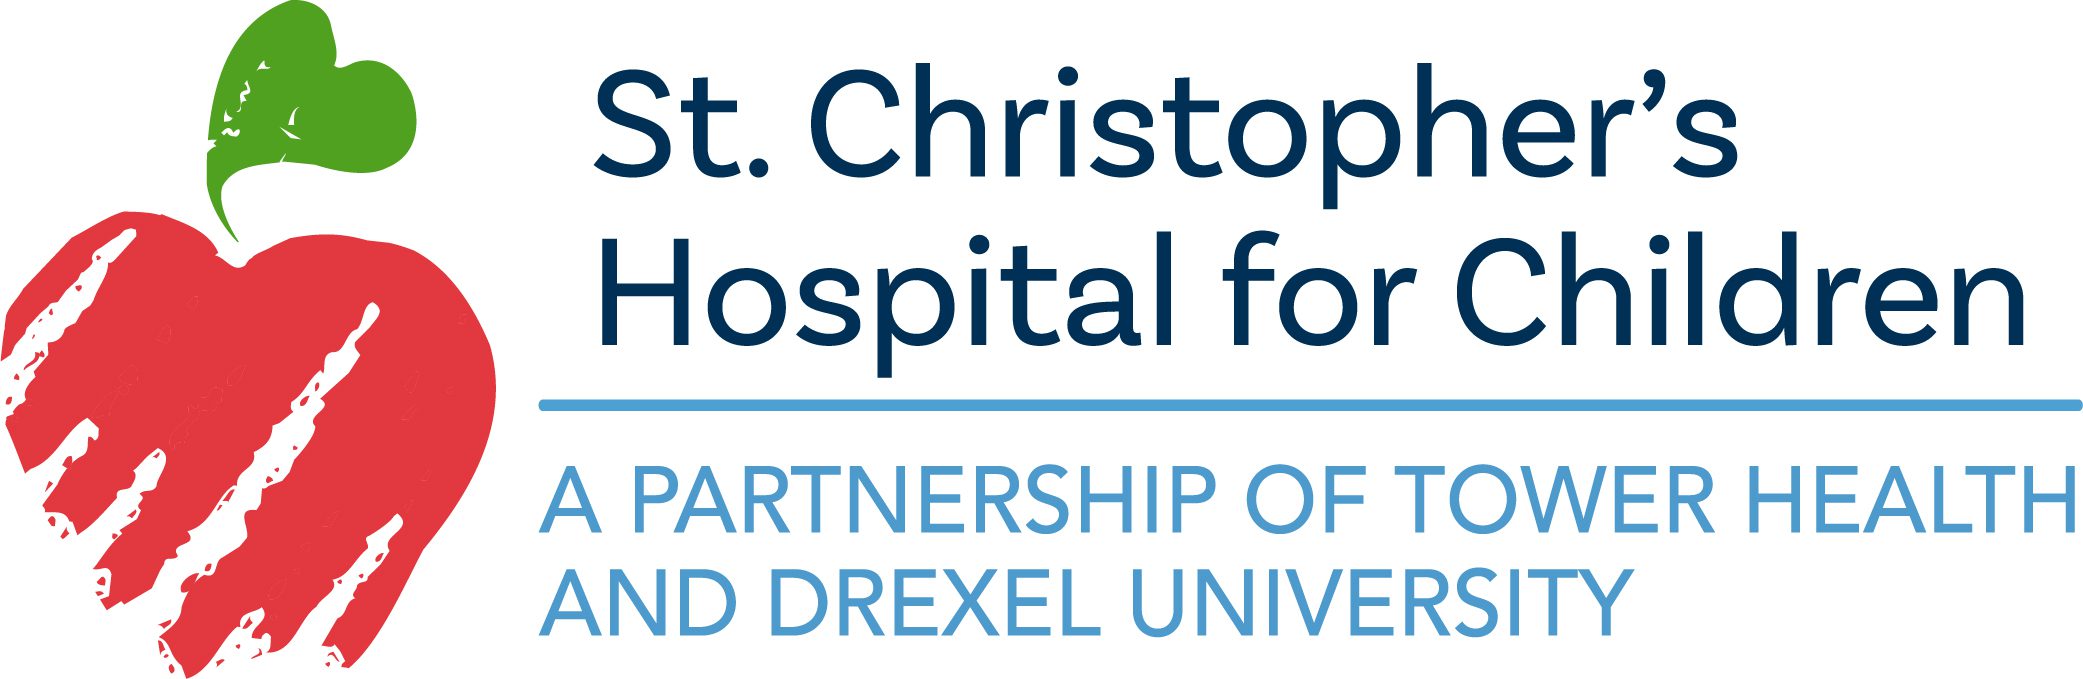 St. Christopher's Hospital for Children logo